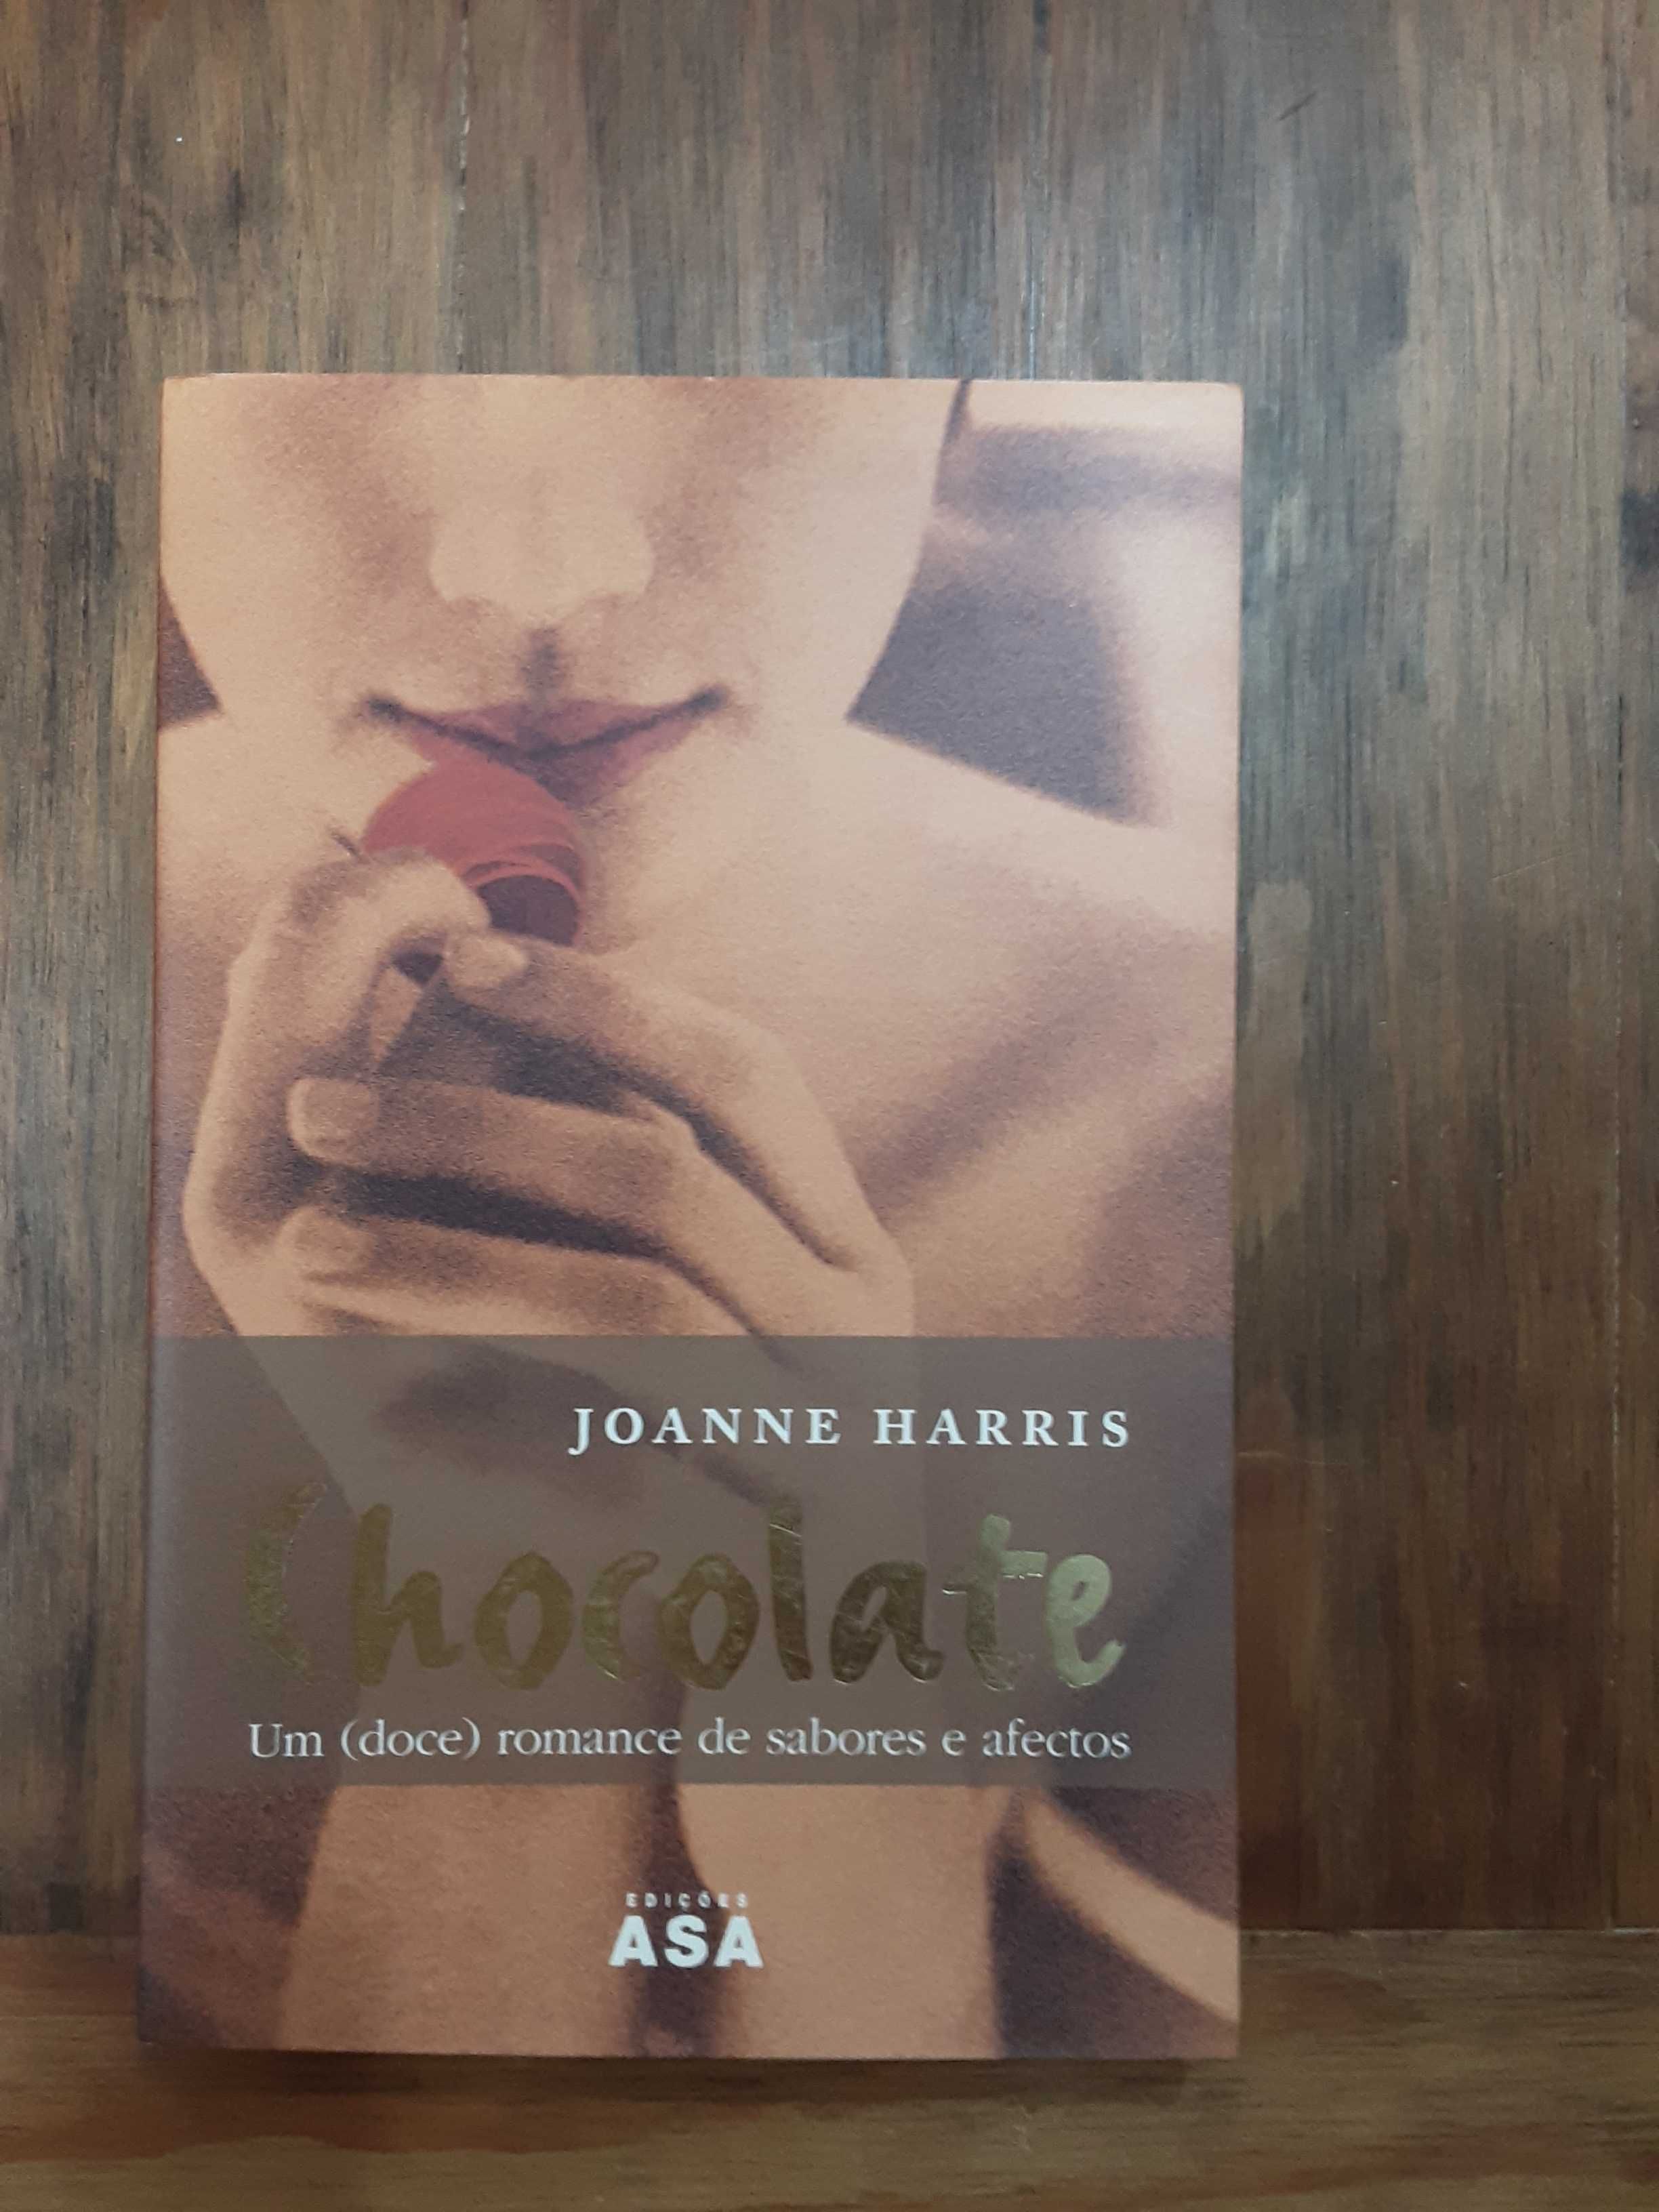 Lote de livros da Joanne Harris